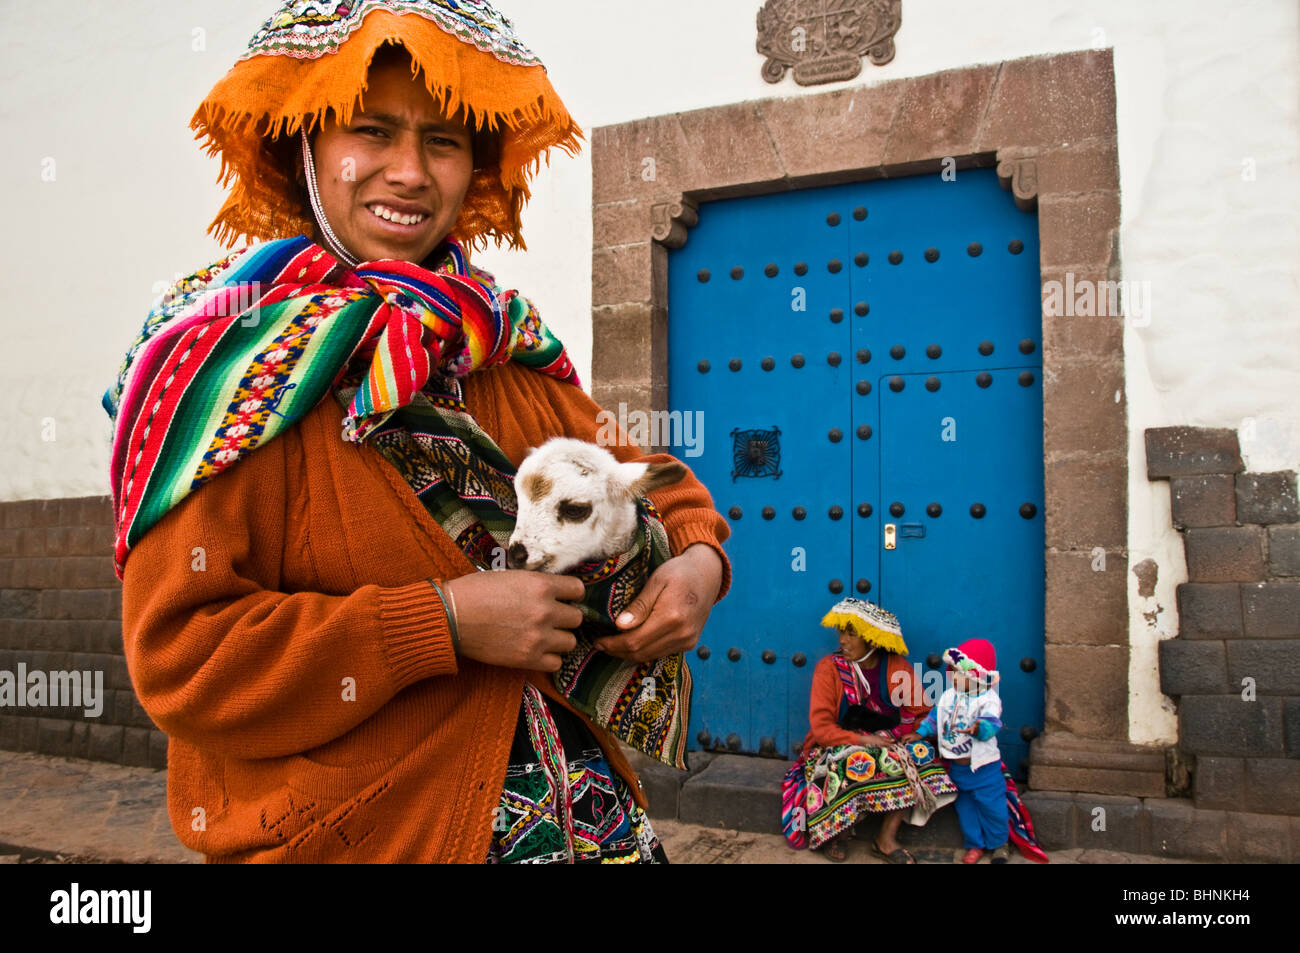 Le donne indigene peruviane tradizionali sul mercato con i loro lama da compagnia Foto Stock